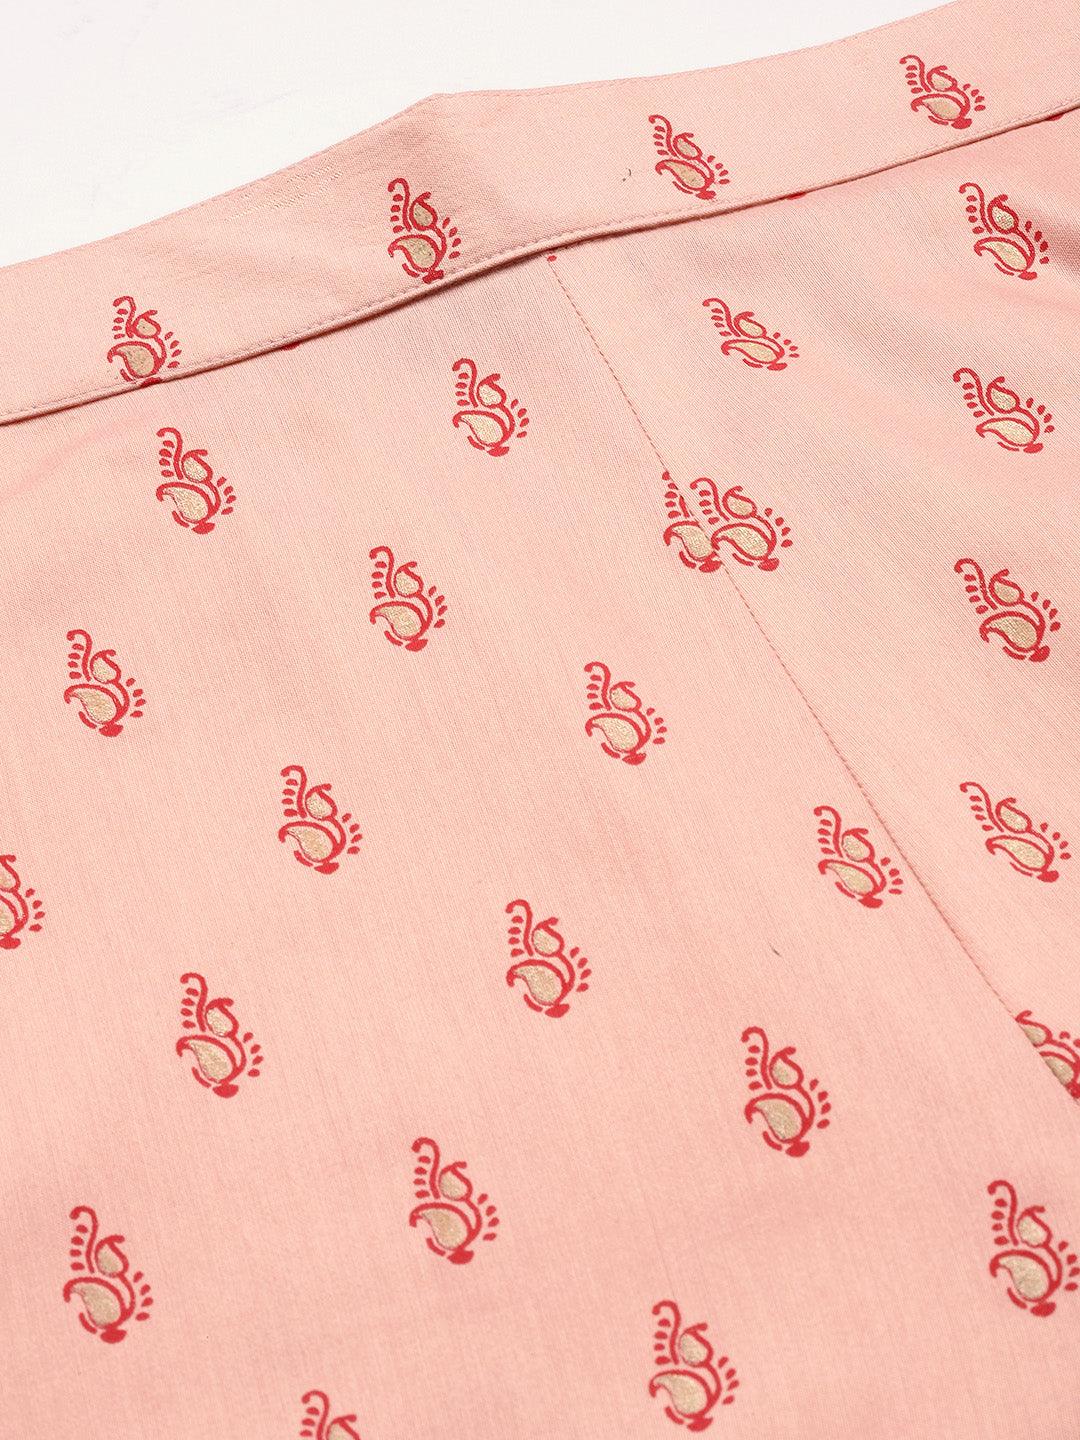 Peach Printed Silk Trousers - Libas